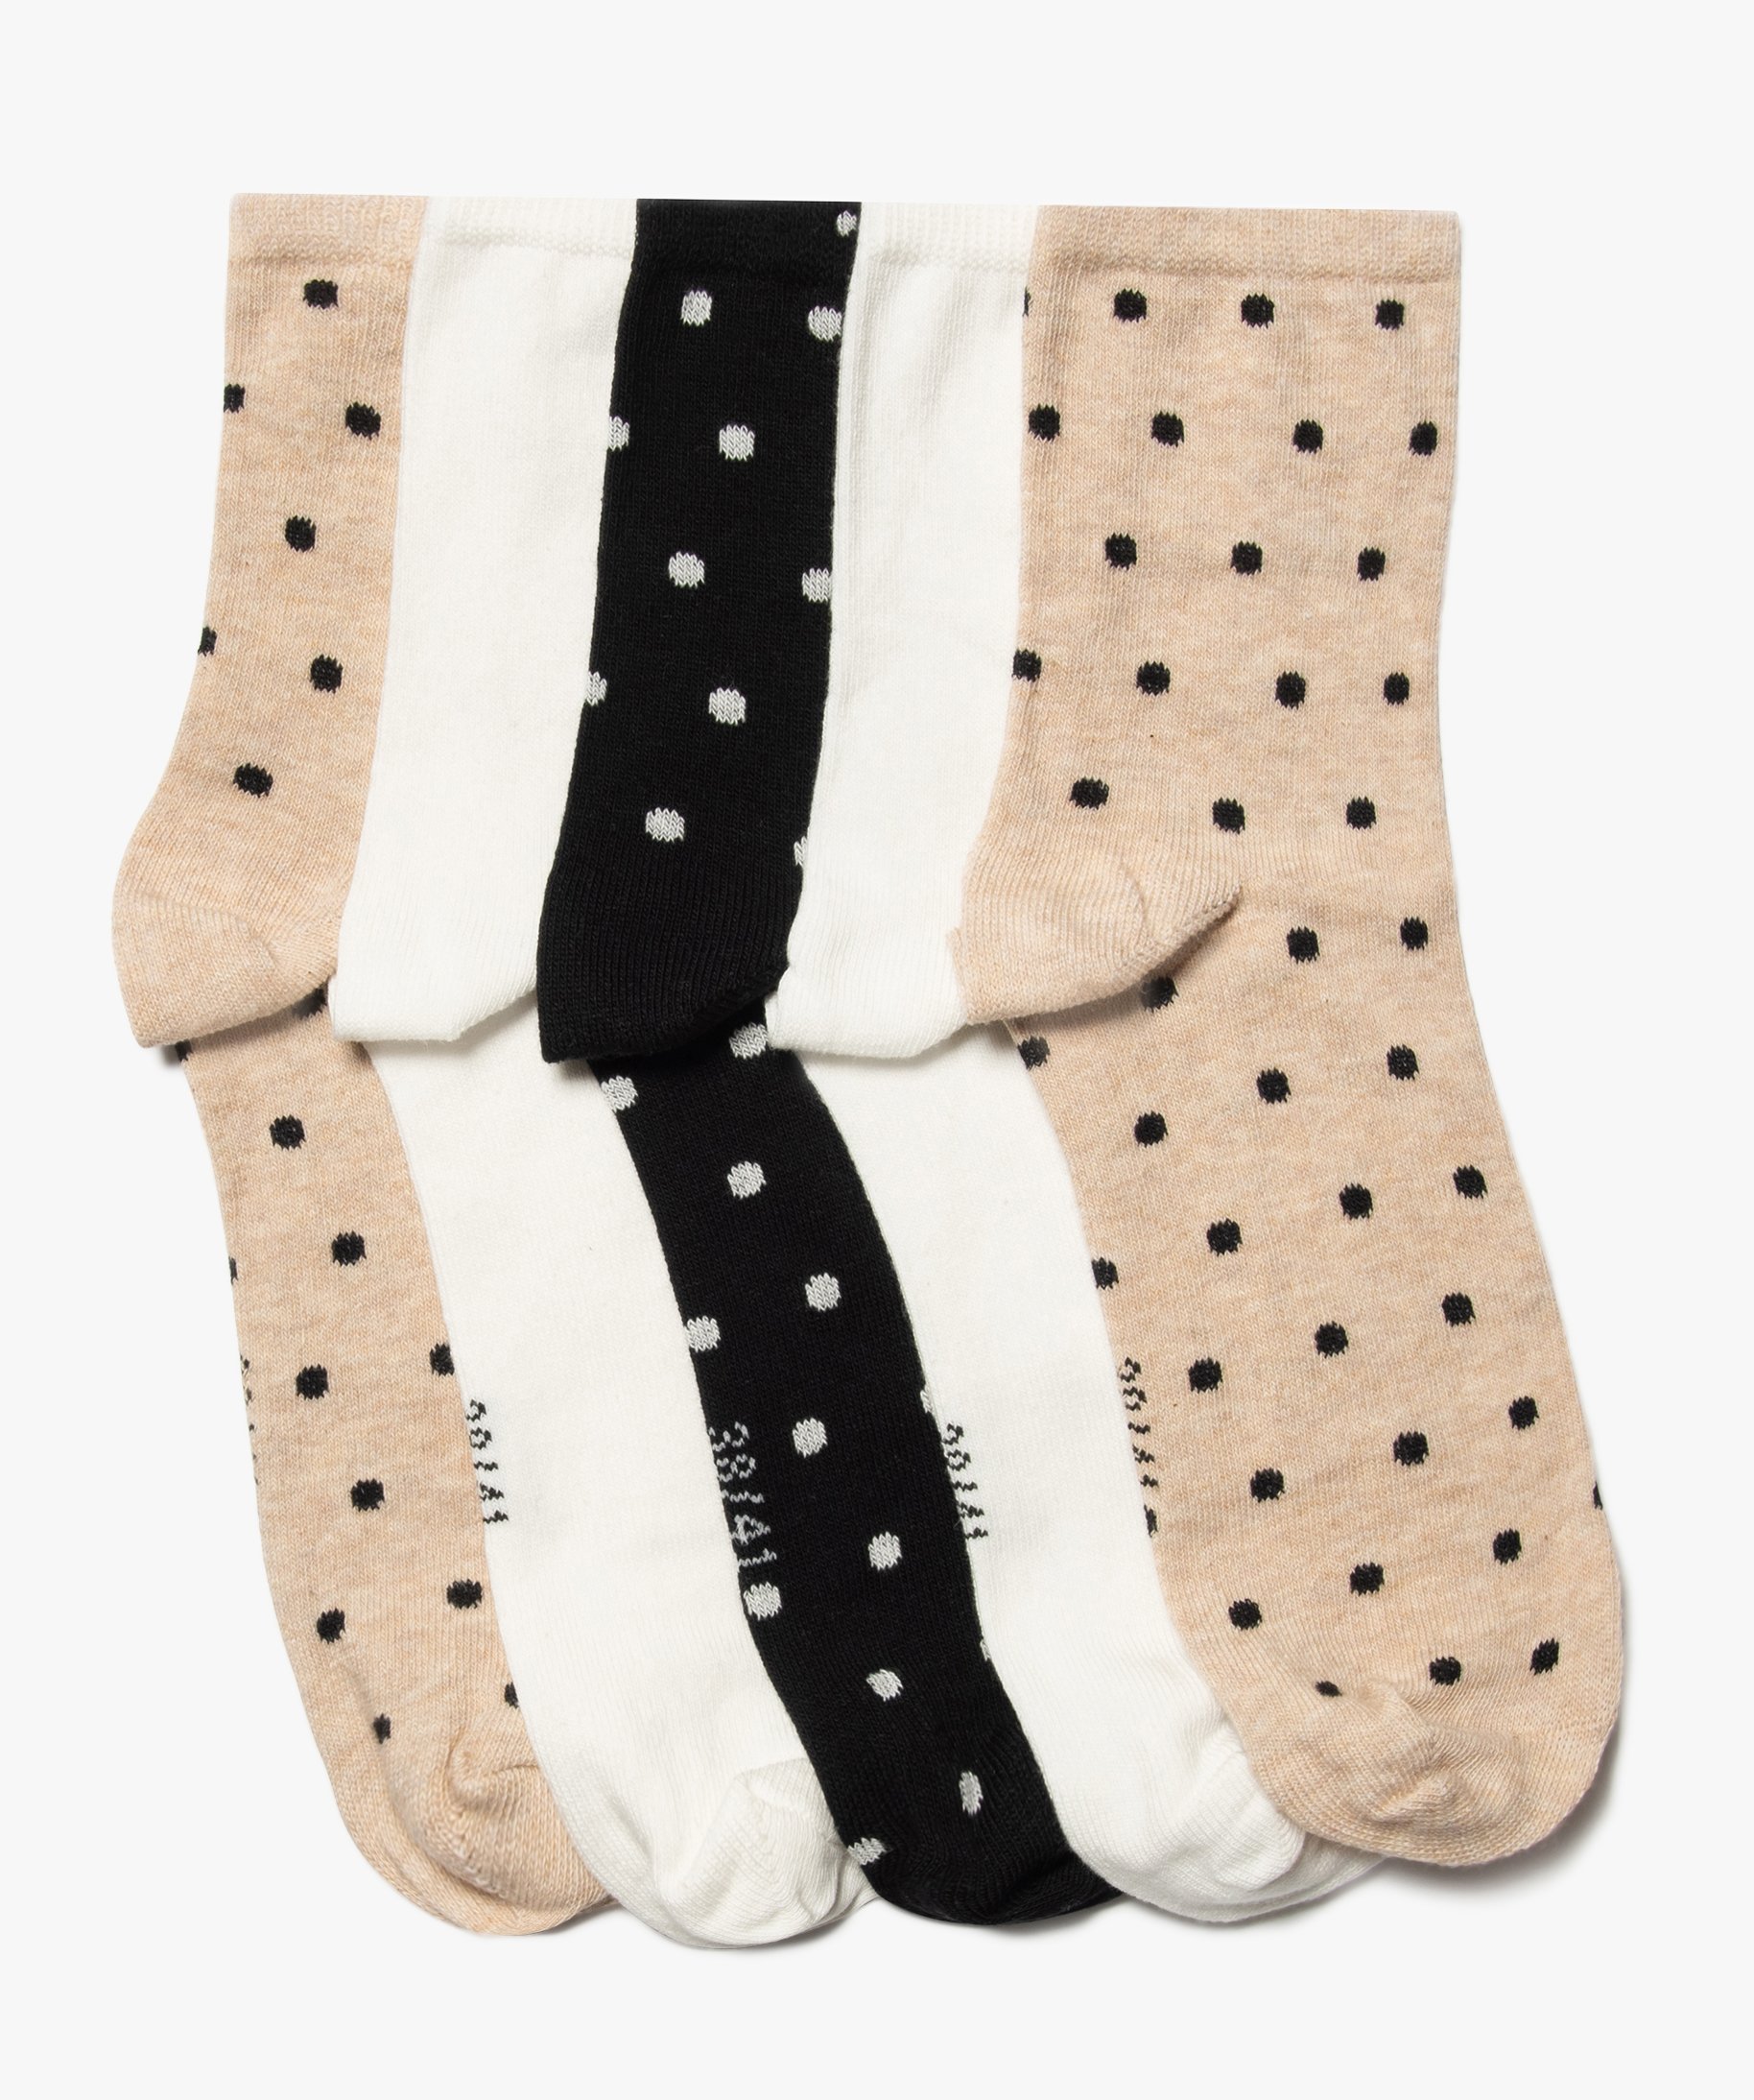 Chaussettes pour enfants en coton extensible avec motif à pois